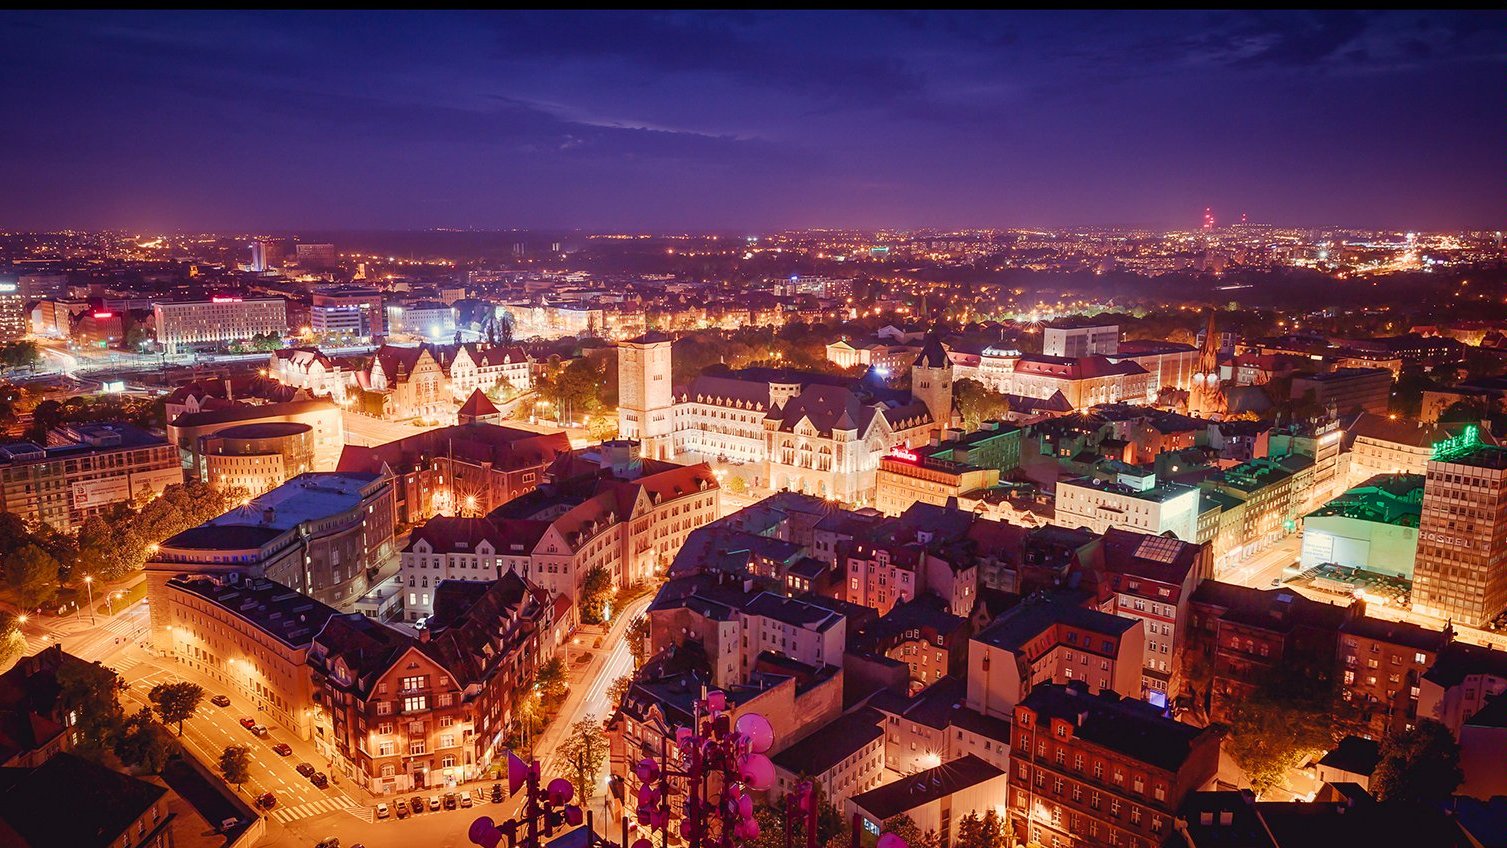 Fitch wskazuje, że Poznań jest najsilniejszym ekonomicznie regionalnym polskim miastem - grafika artykułu